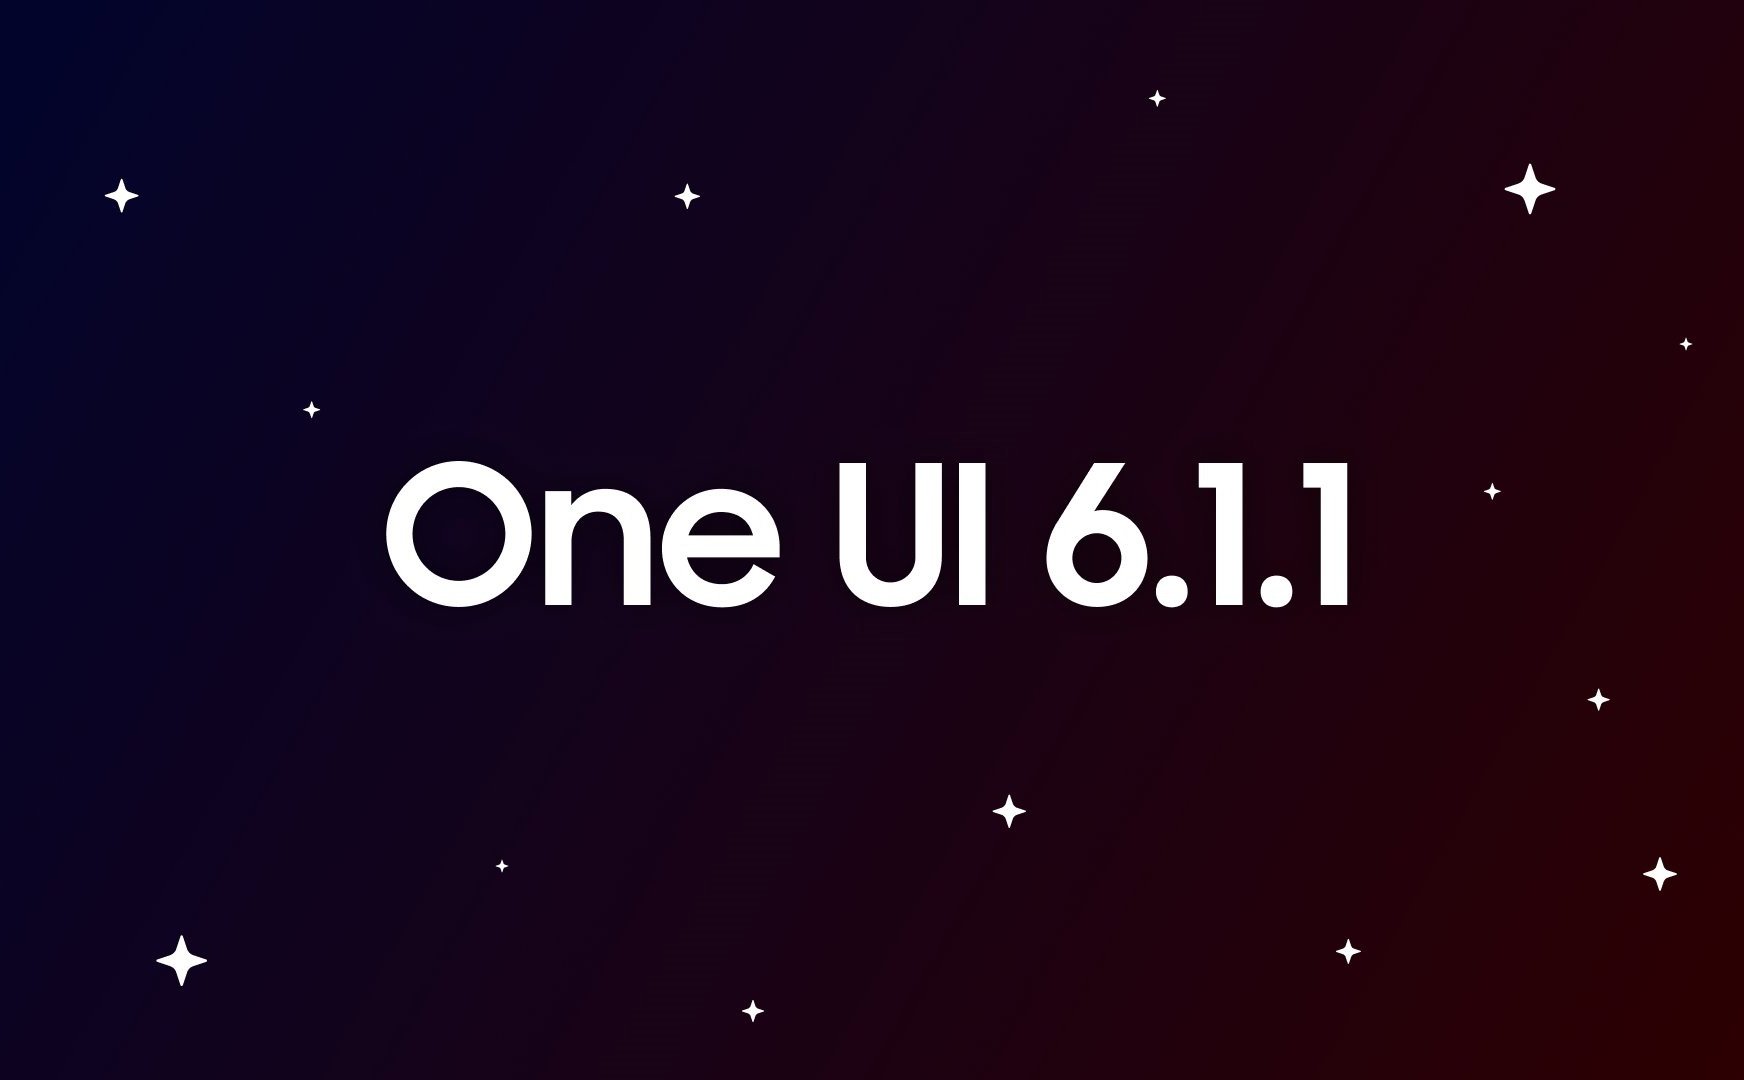 One UI 6.1.1 sẽ có tính năng AI video?